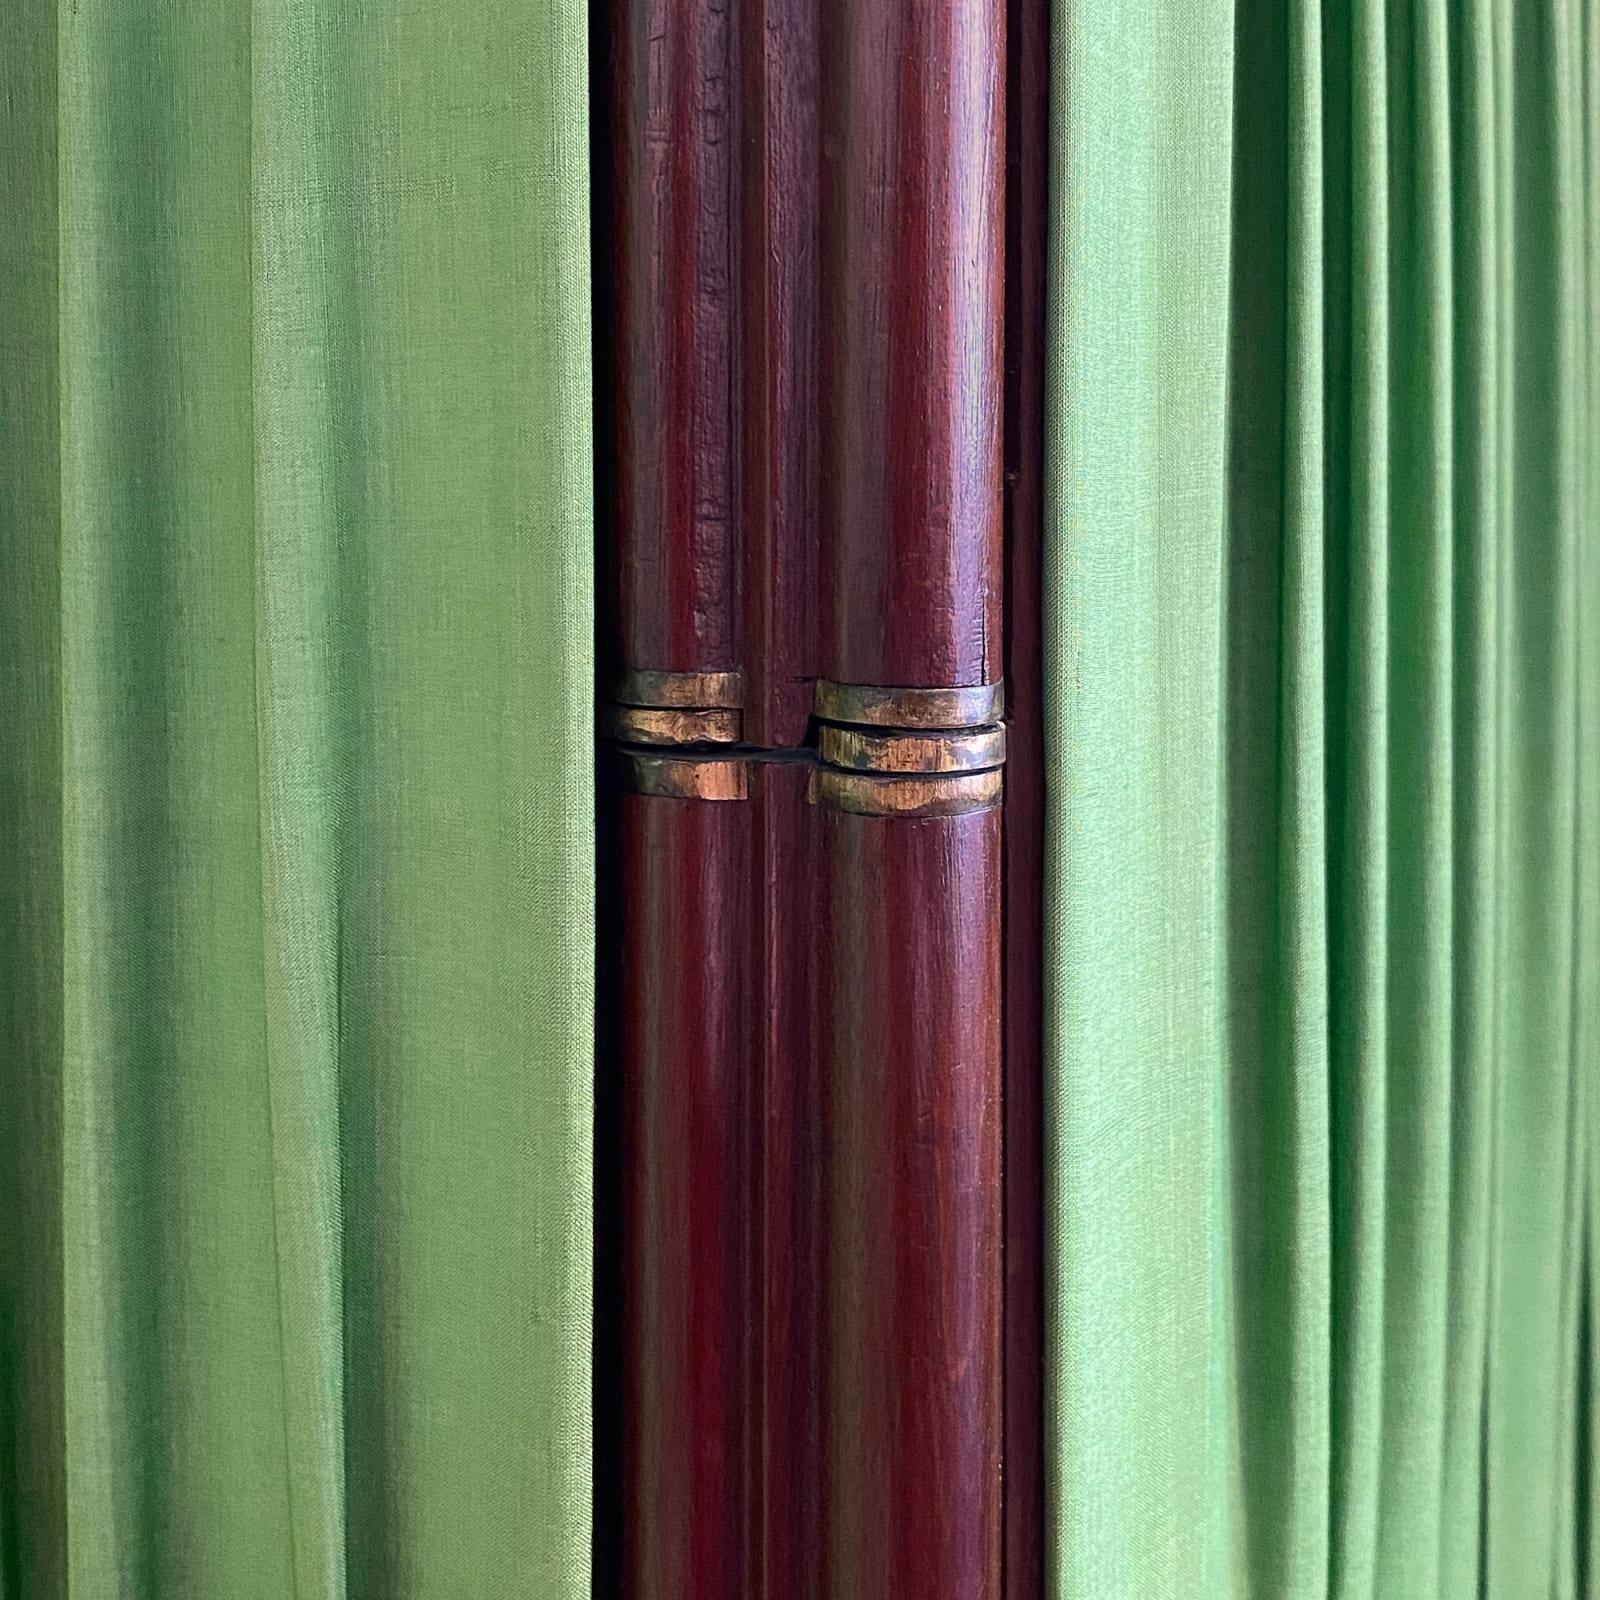 Fünffacher Faltenschirm mit original apfelgrüner plissierter Seide und Borte.
Rahmen aus Mahagoniholz.
Französisch um 1810
Maße: Höhe 118cm Jede Platte 45 cm breit
Im Originalzustand, perfekt getragen und benutzt.